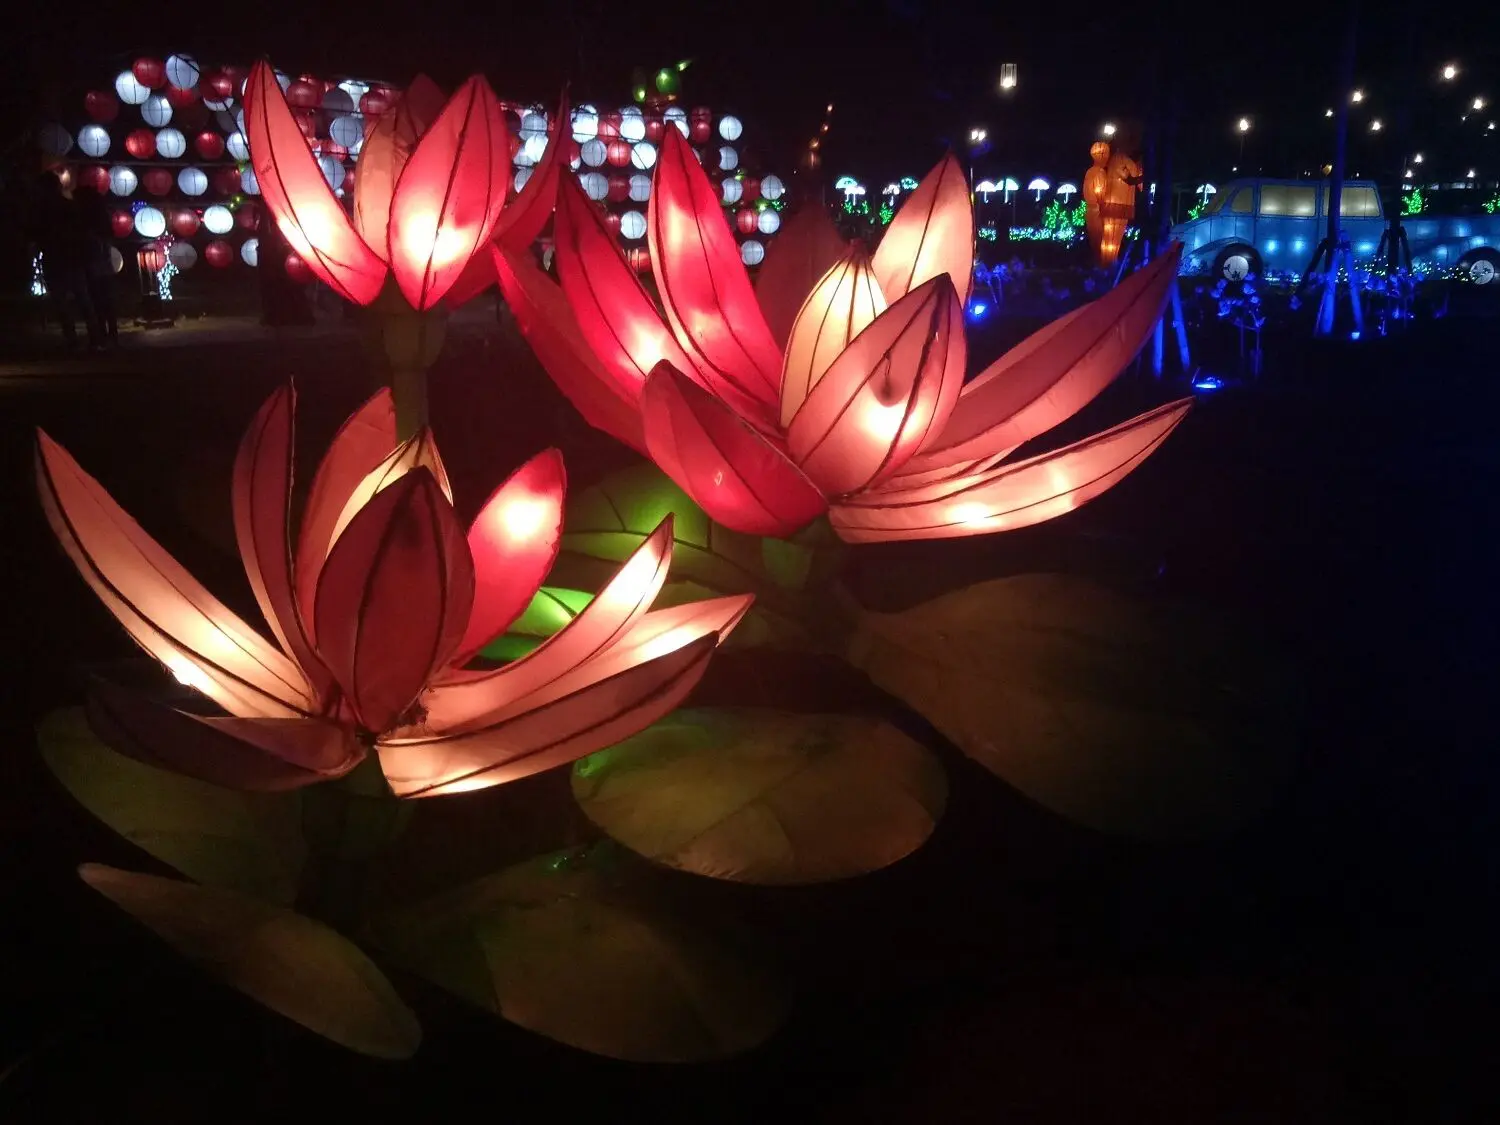  lampion berbentuk bunga yang ada di Kiara Artha Park